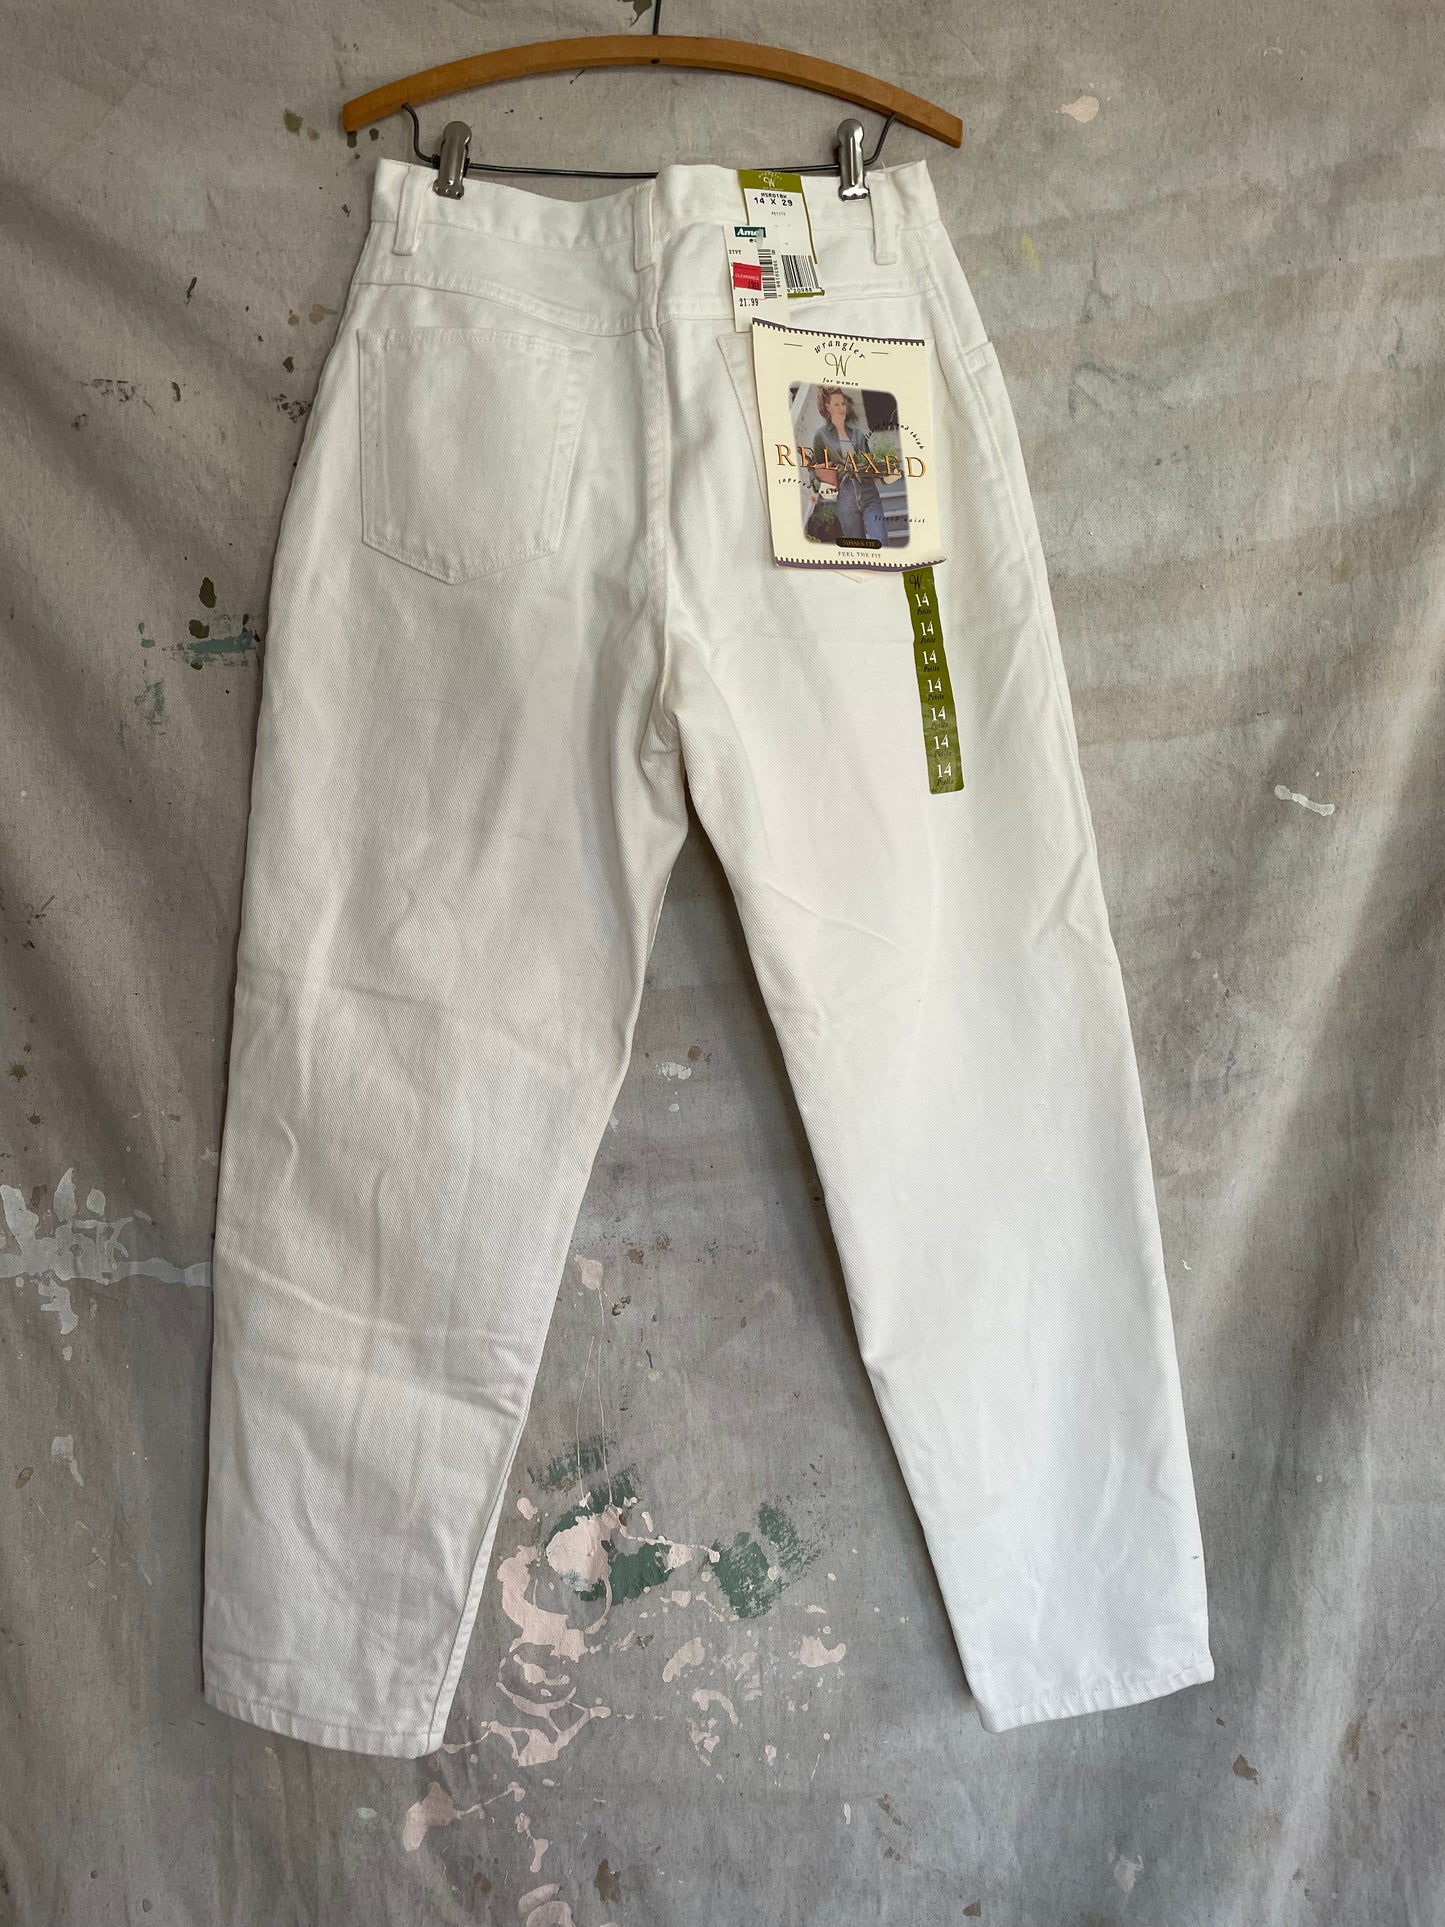 90s Deadstock White Wrangler Jeans